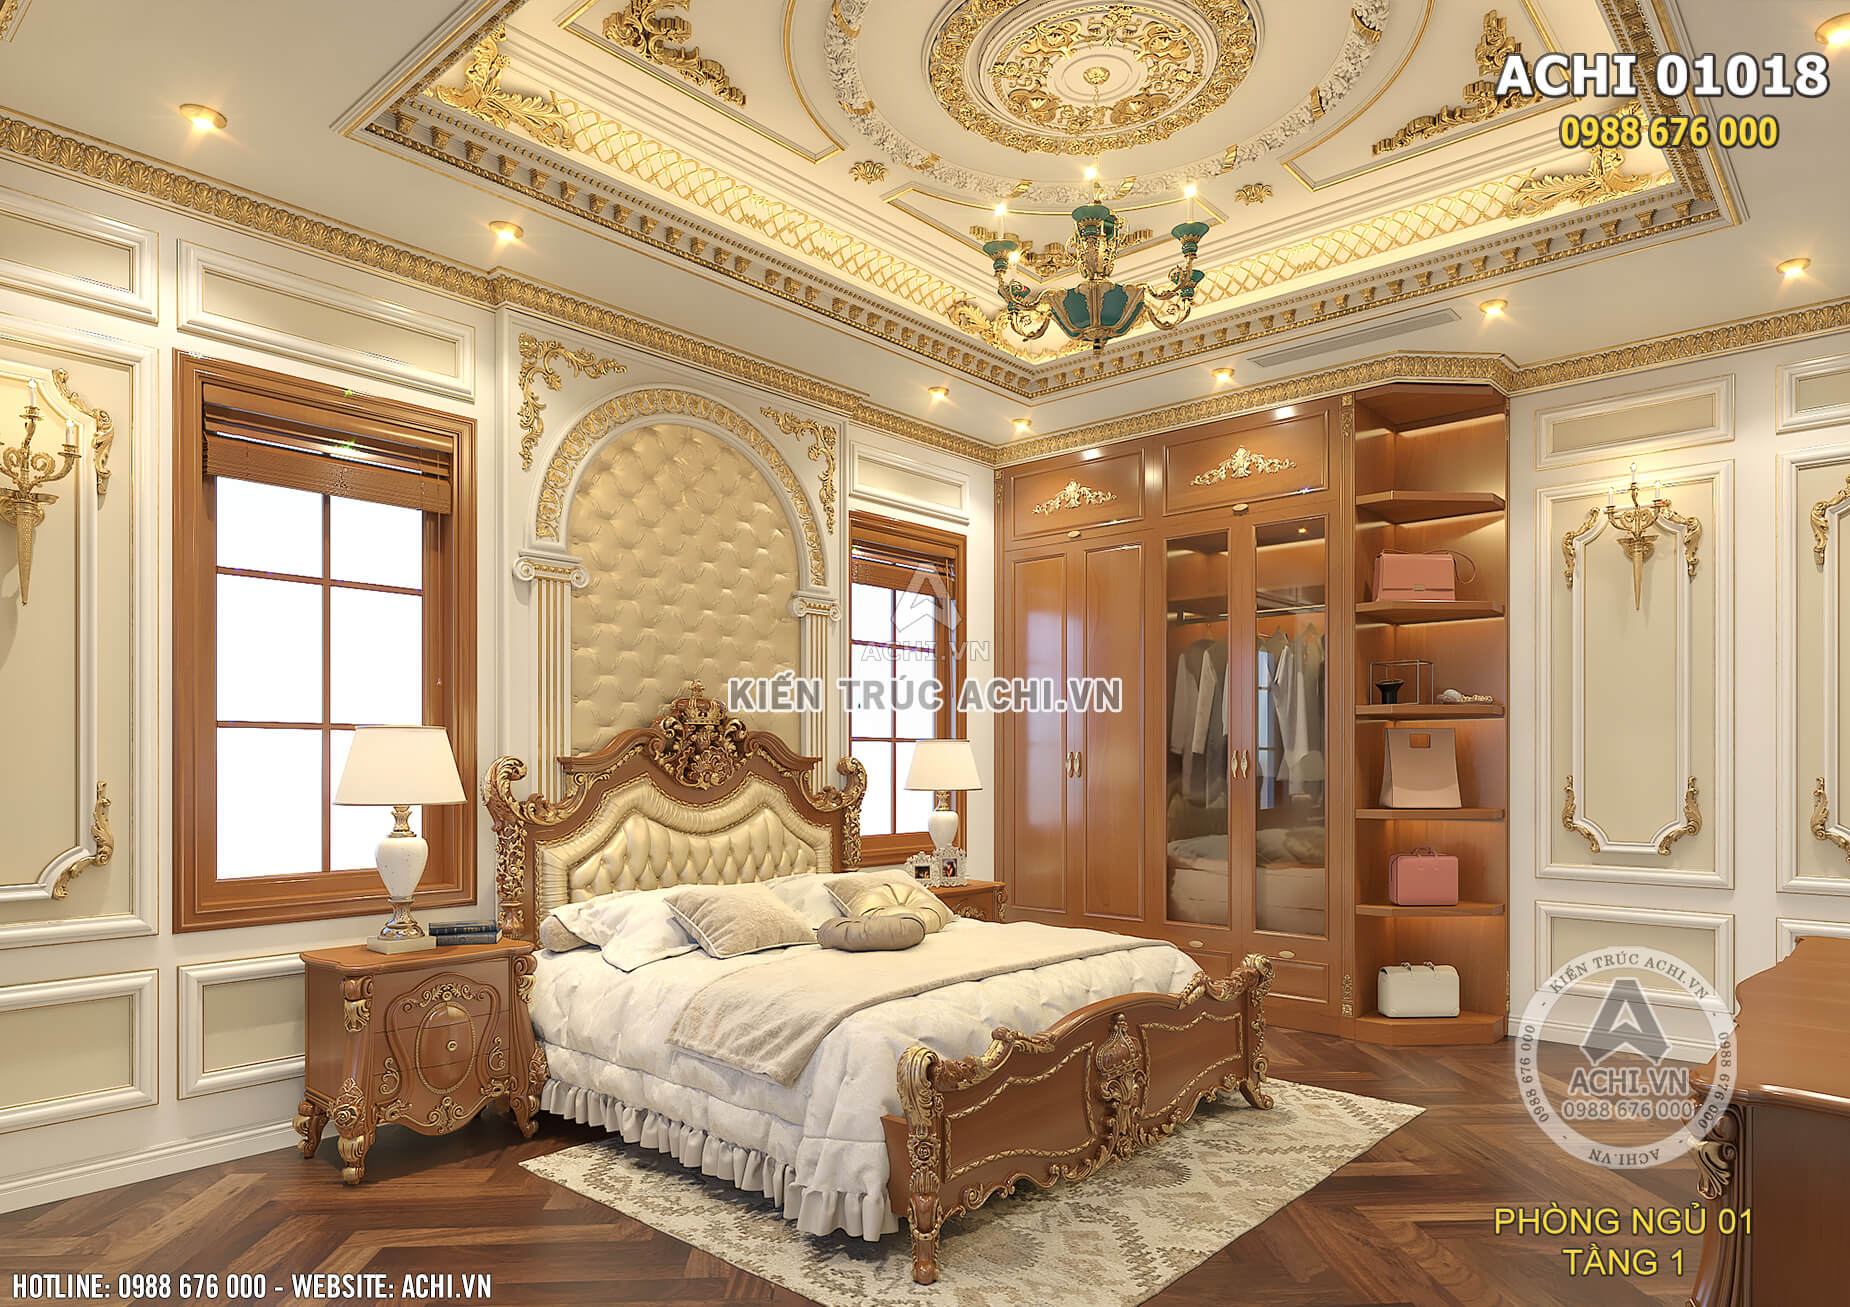 Thiết kế không gian nội thất phòng ngủ đẹp theo phong cách tân cổ điển xa hoa, lộng lẫy